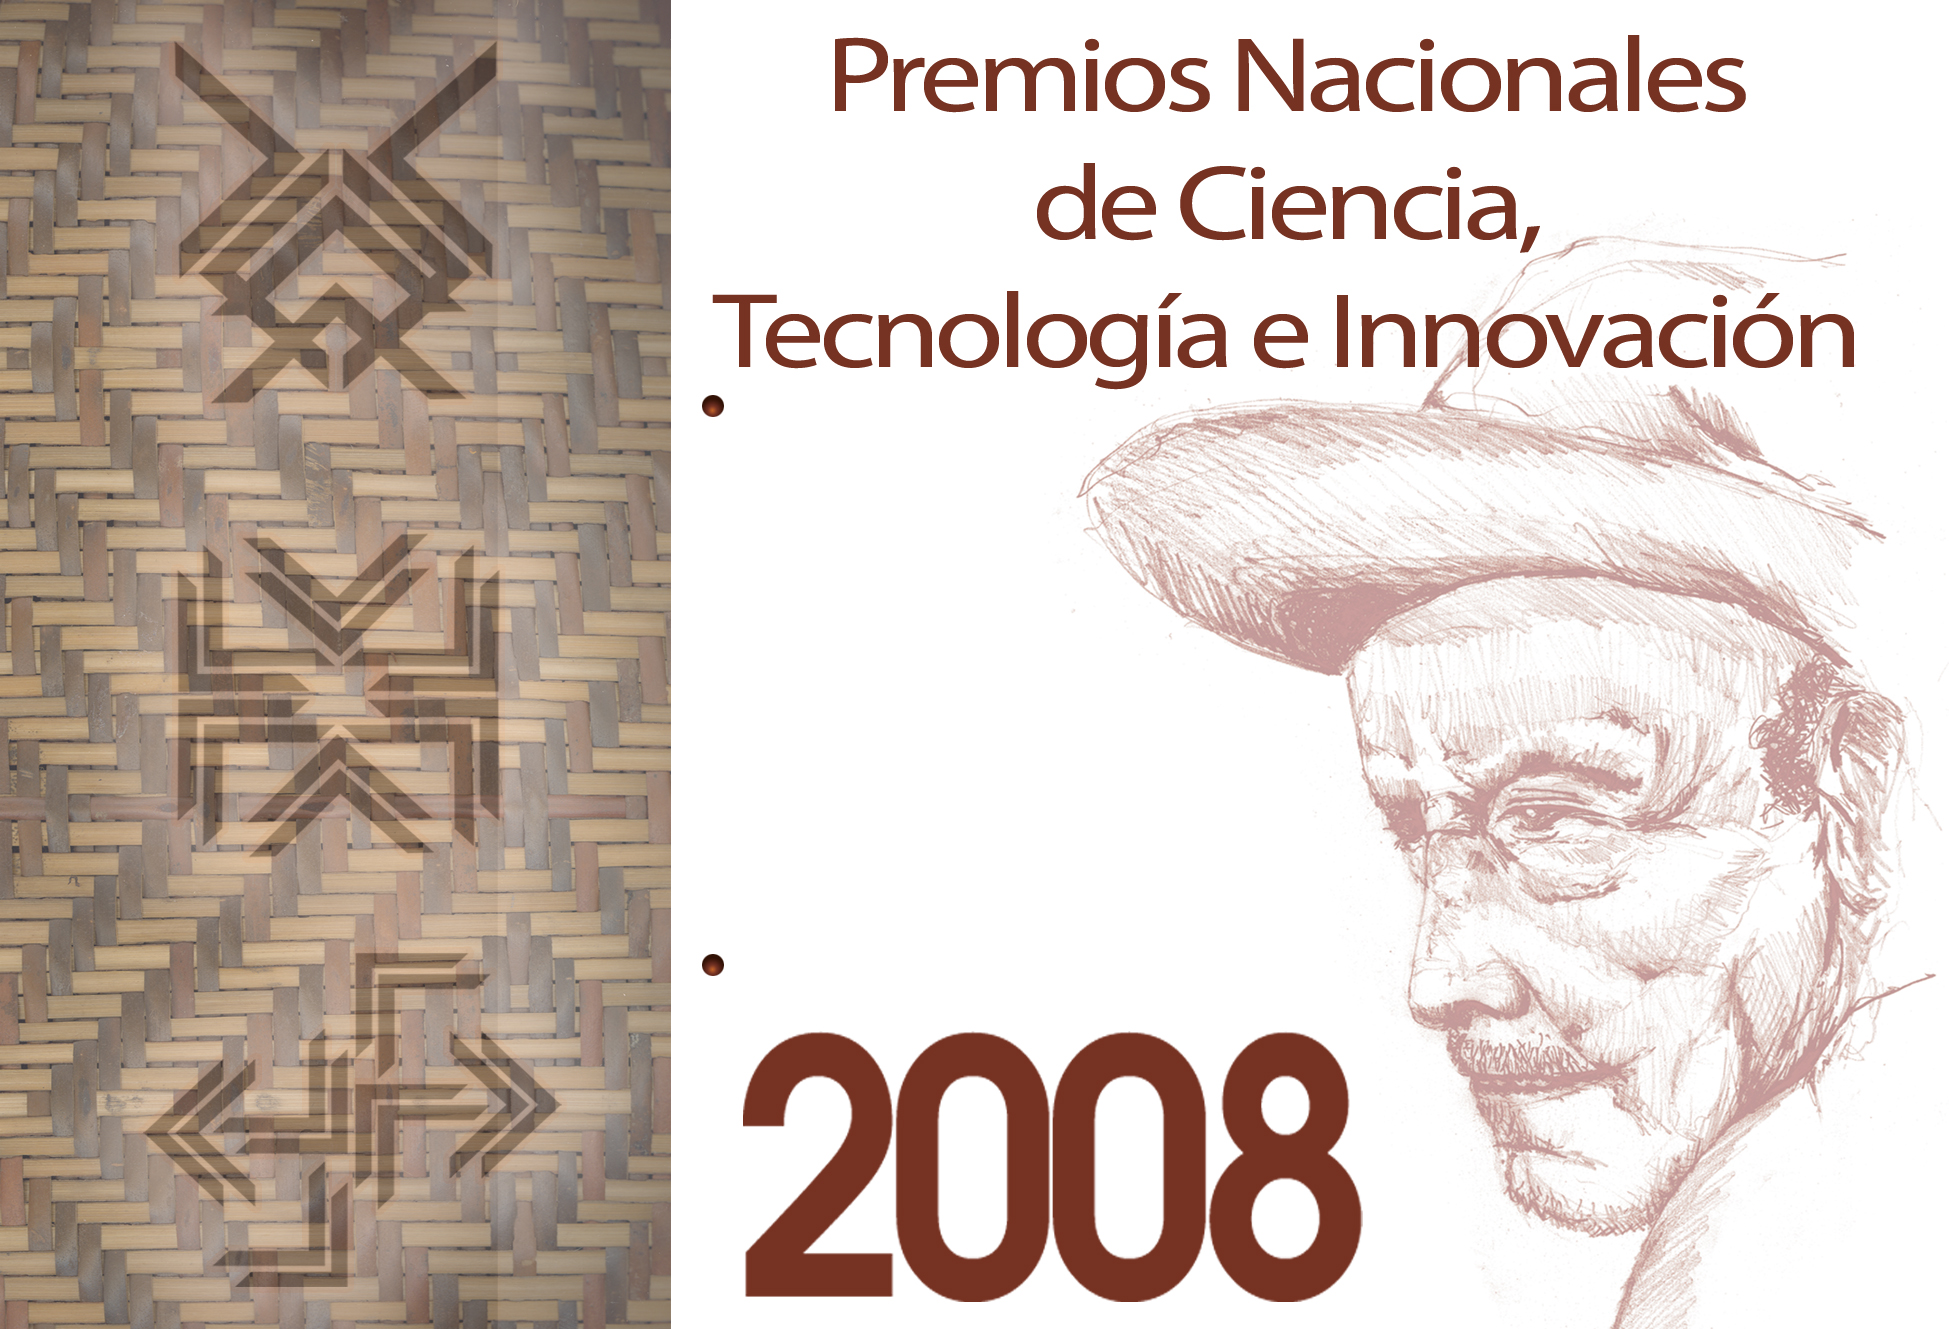 Premios Nacionales de Ciencia, Tecnología e Innovación 2008